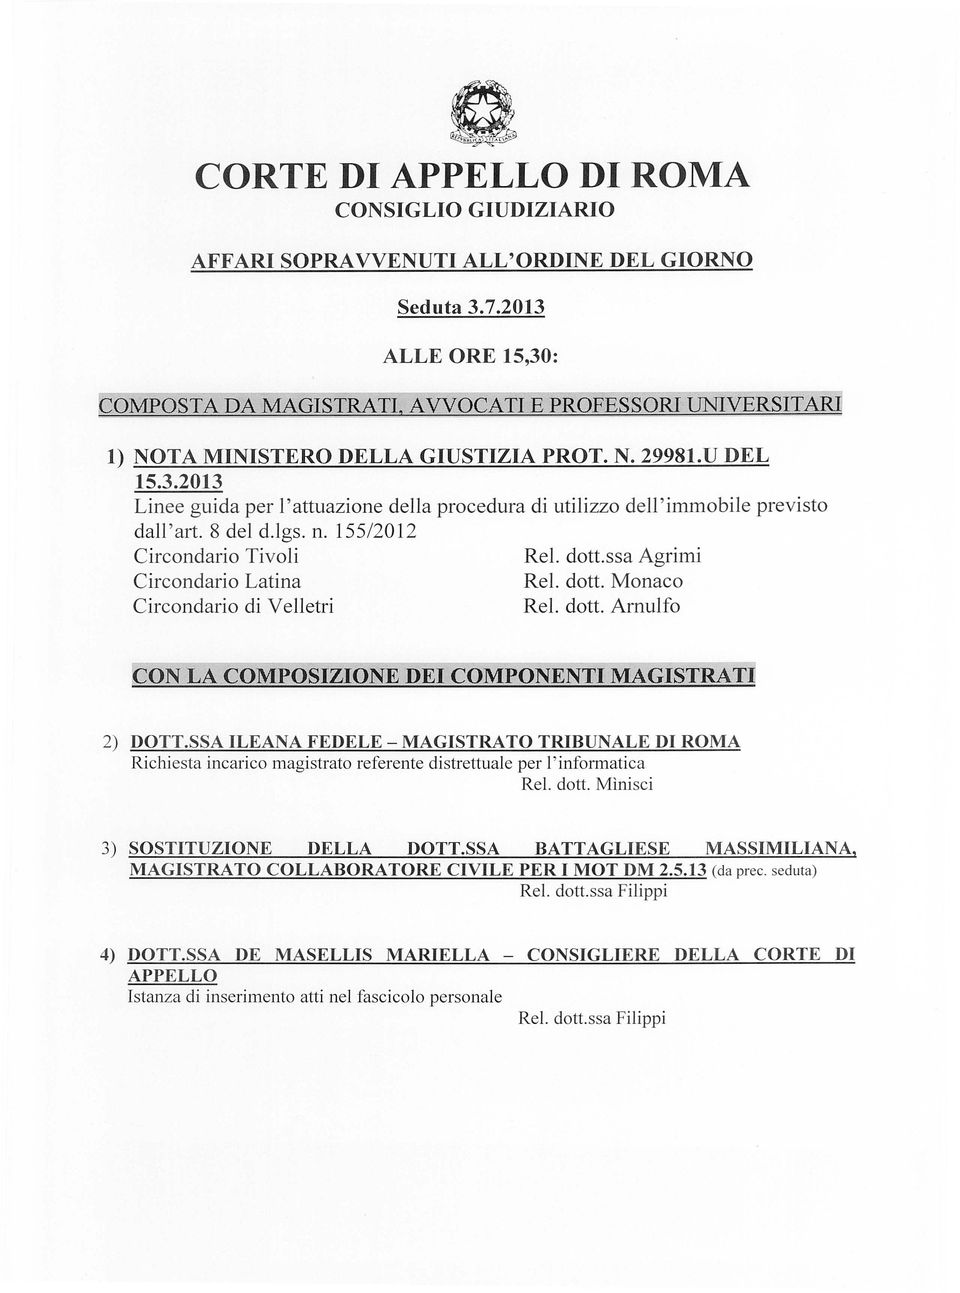 155/2012 Circondario Tivoli Circondario Latina Circondario di Velletri ReI. dotto Monaco ReI. dotto Arnulfo ON LA COMPOSIZIONE DEI COMPONENTI MAGISTRATI] 2) DOTT.